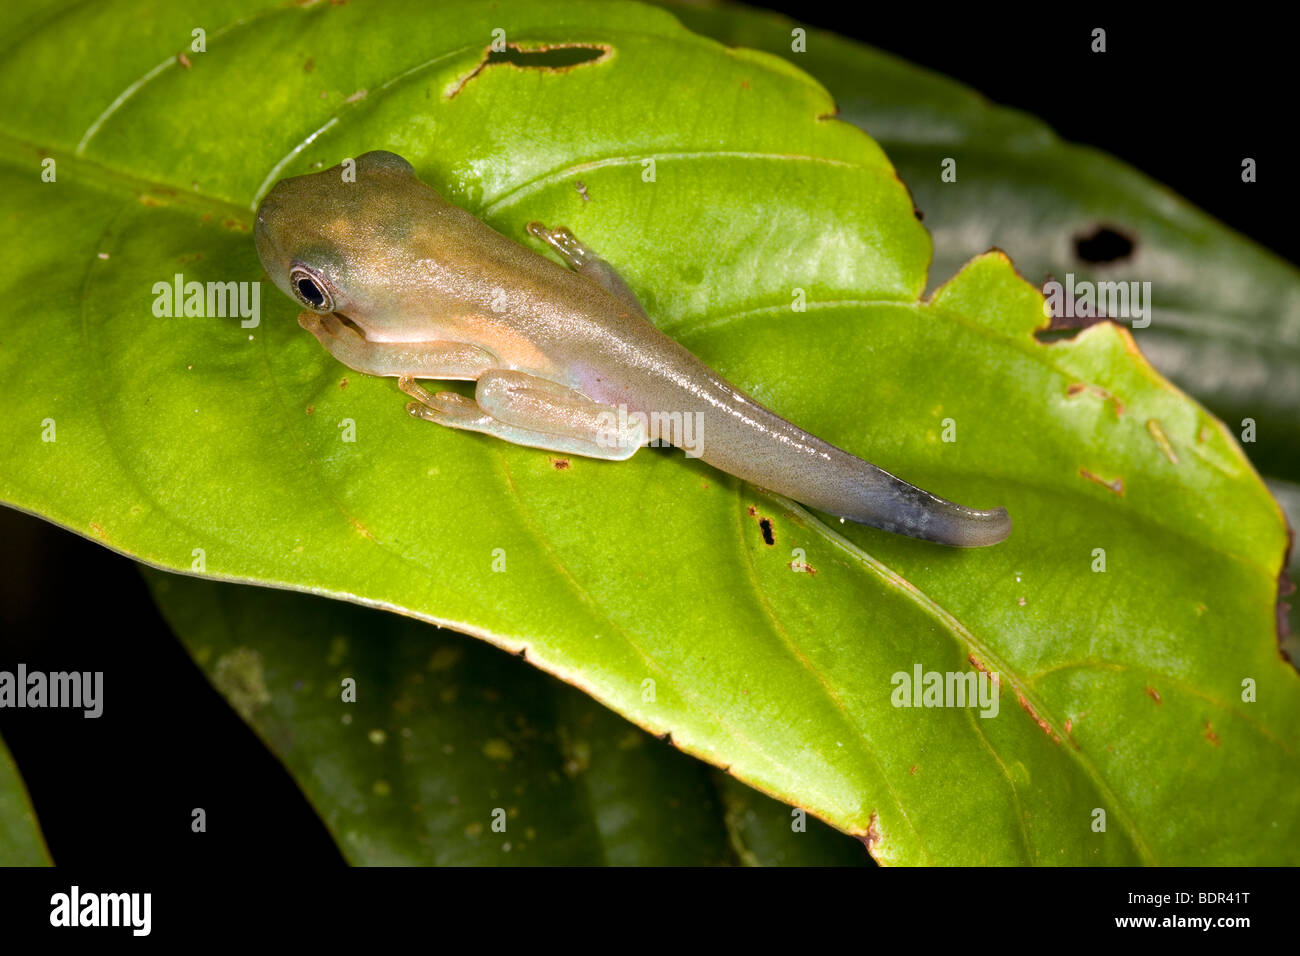 Metamorfosis de anfibios - cambio de renacuajo en rana Foto de stock